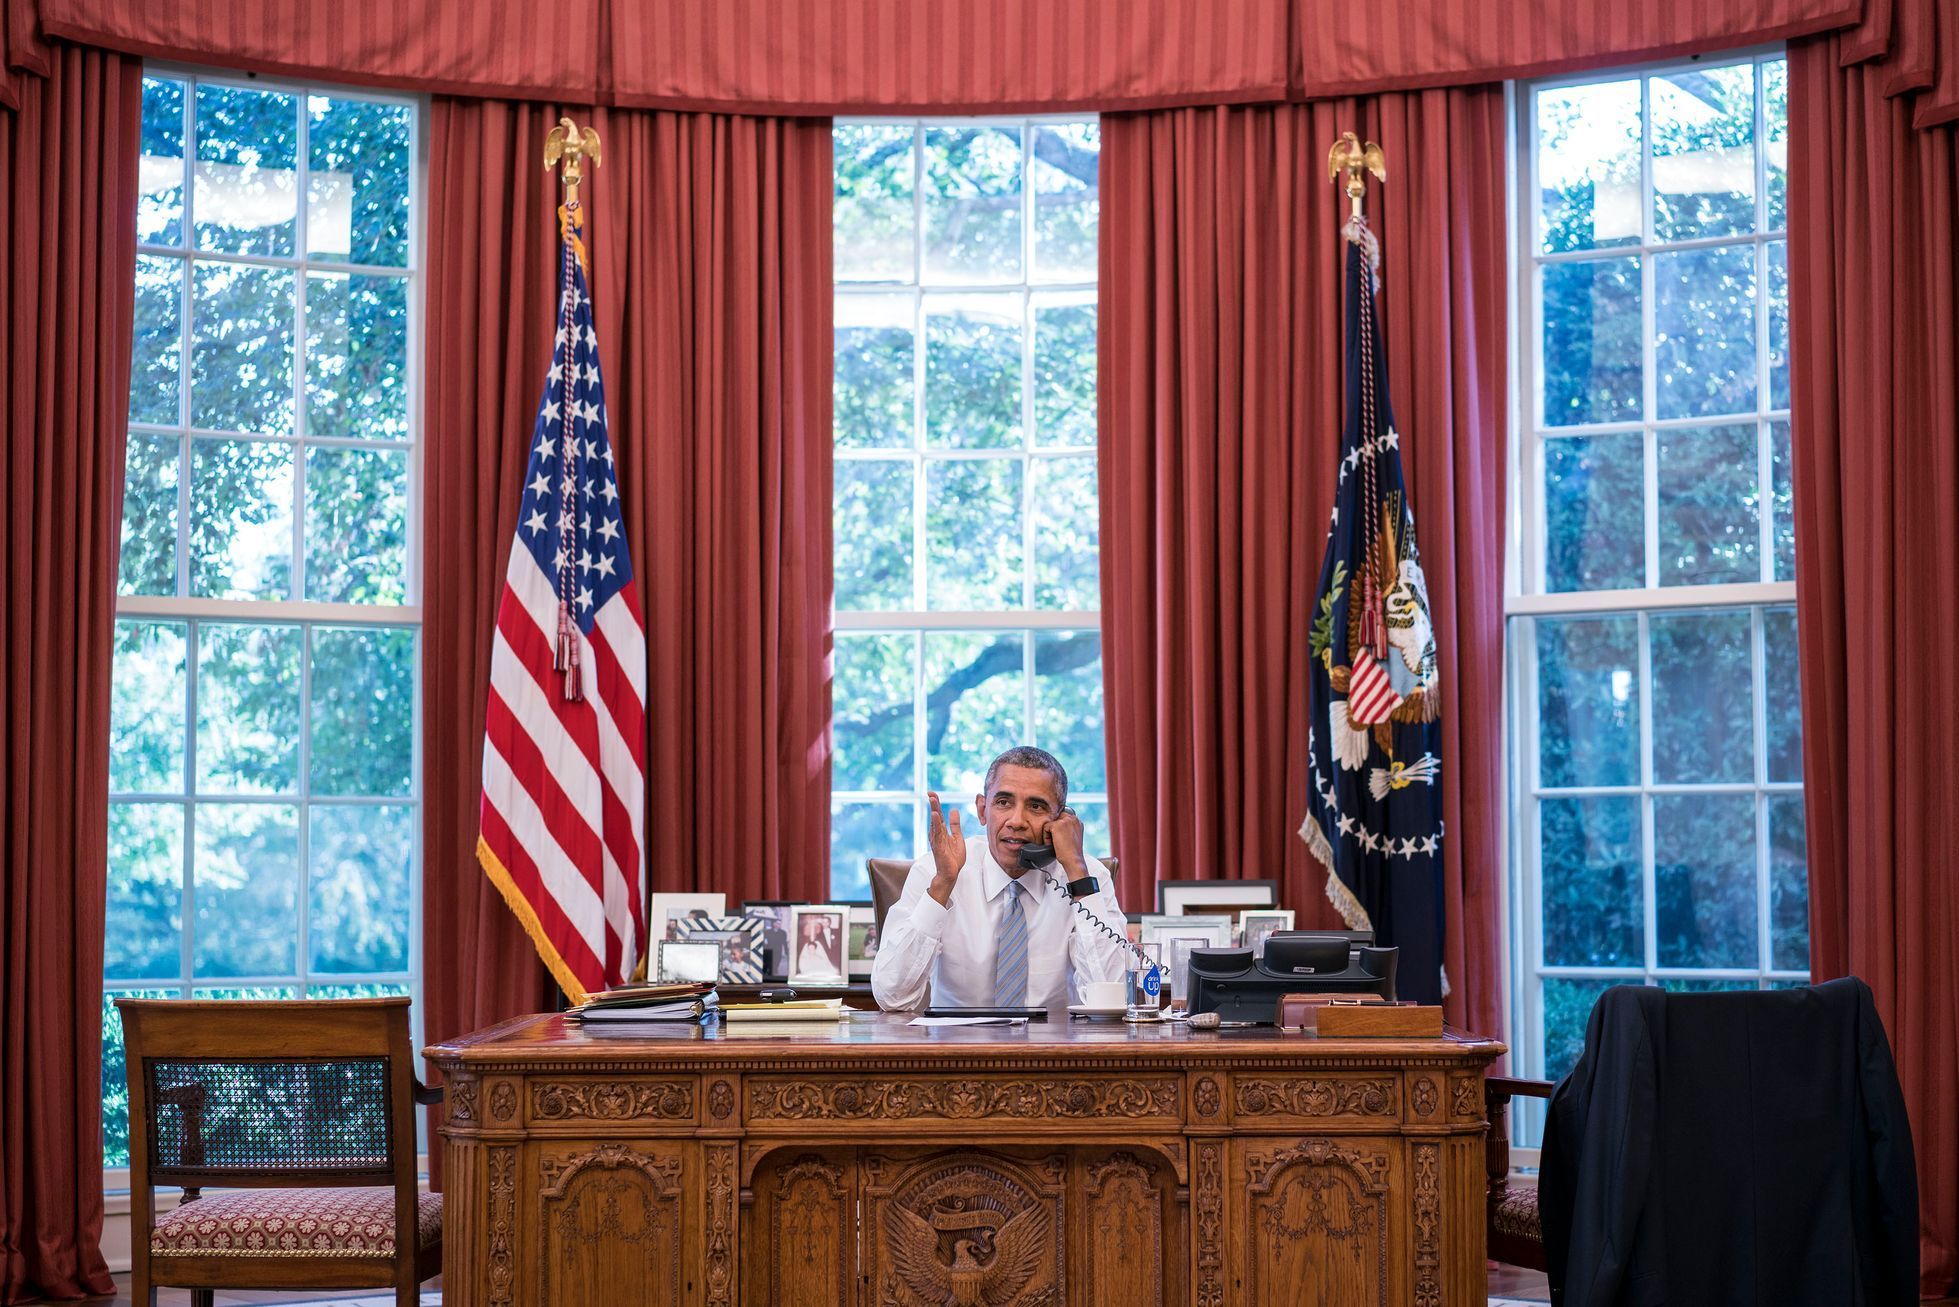 Obama oval office